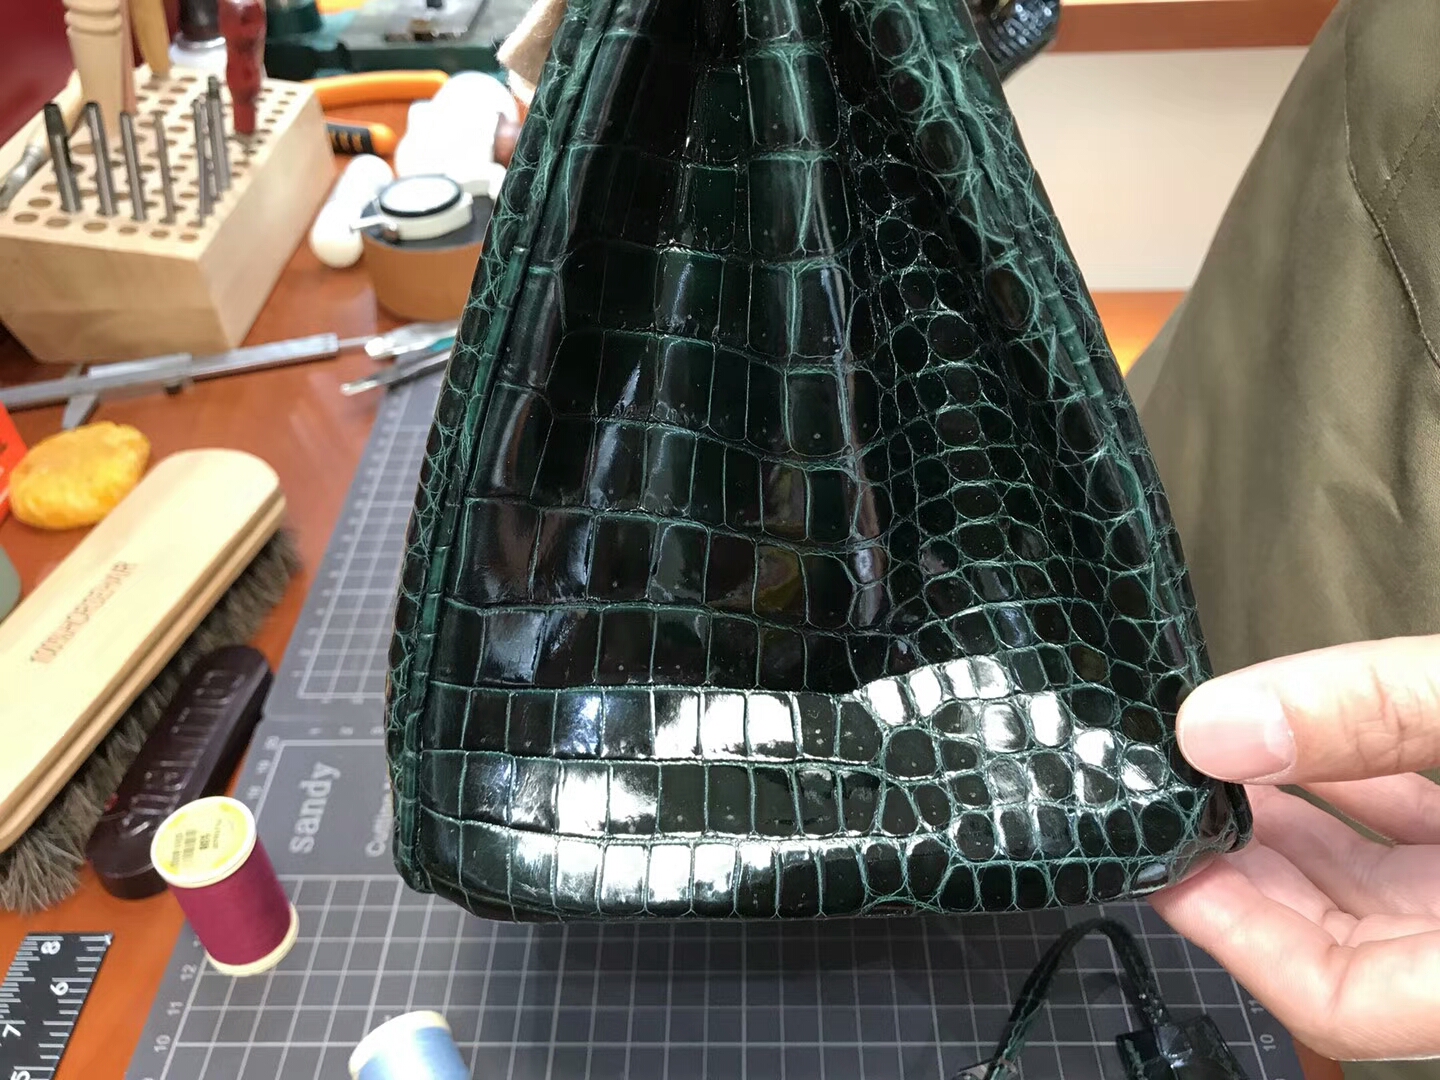 爱马仕 HERMES 铂金包 Birkin 25cm 配全套专柜原版包装 全球发售 鳄鱼 CK67祖母绿